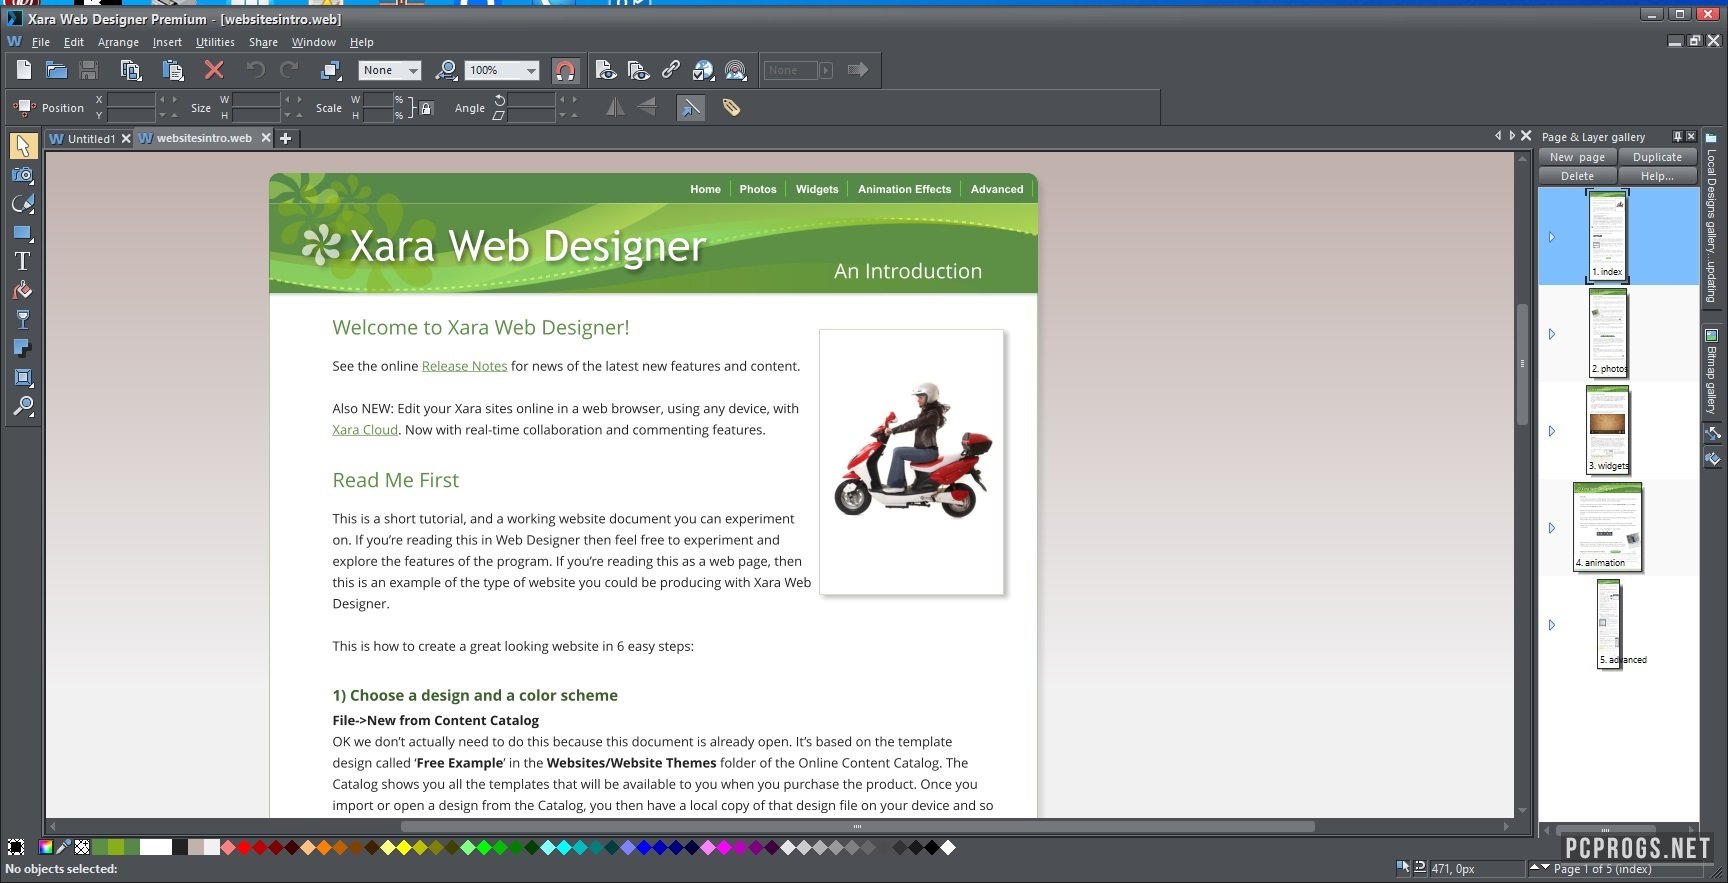 Xara Web Designer Premium 23.2.0.67158 instal the new version for ios